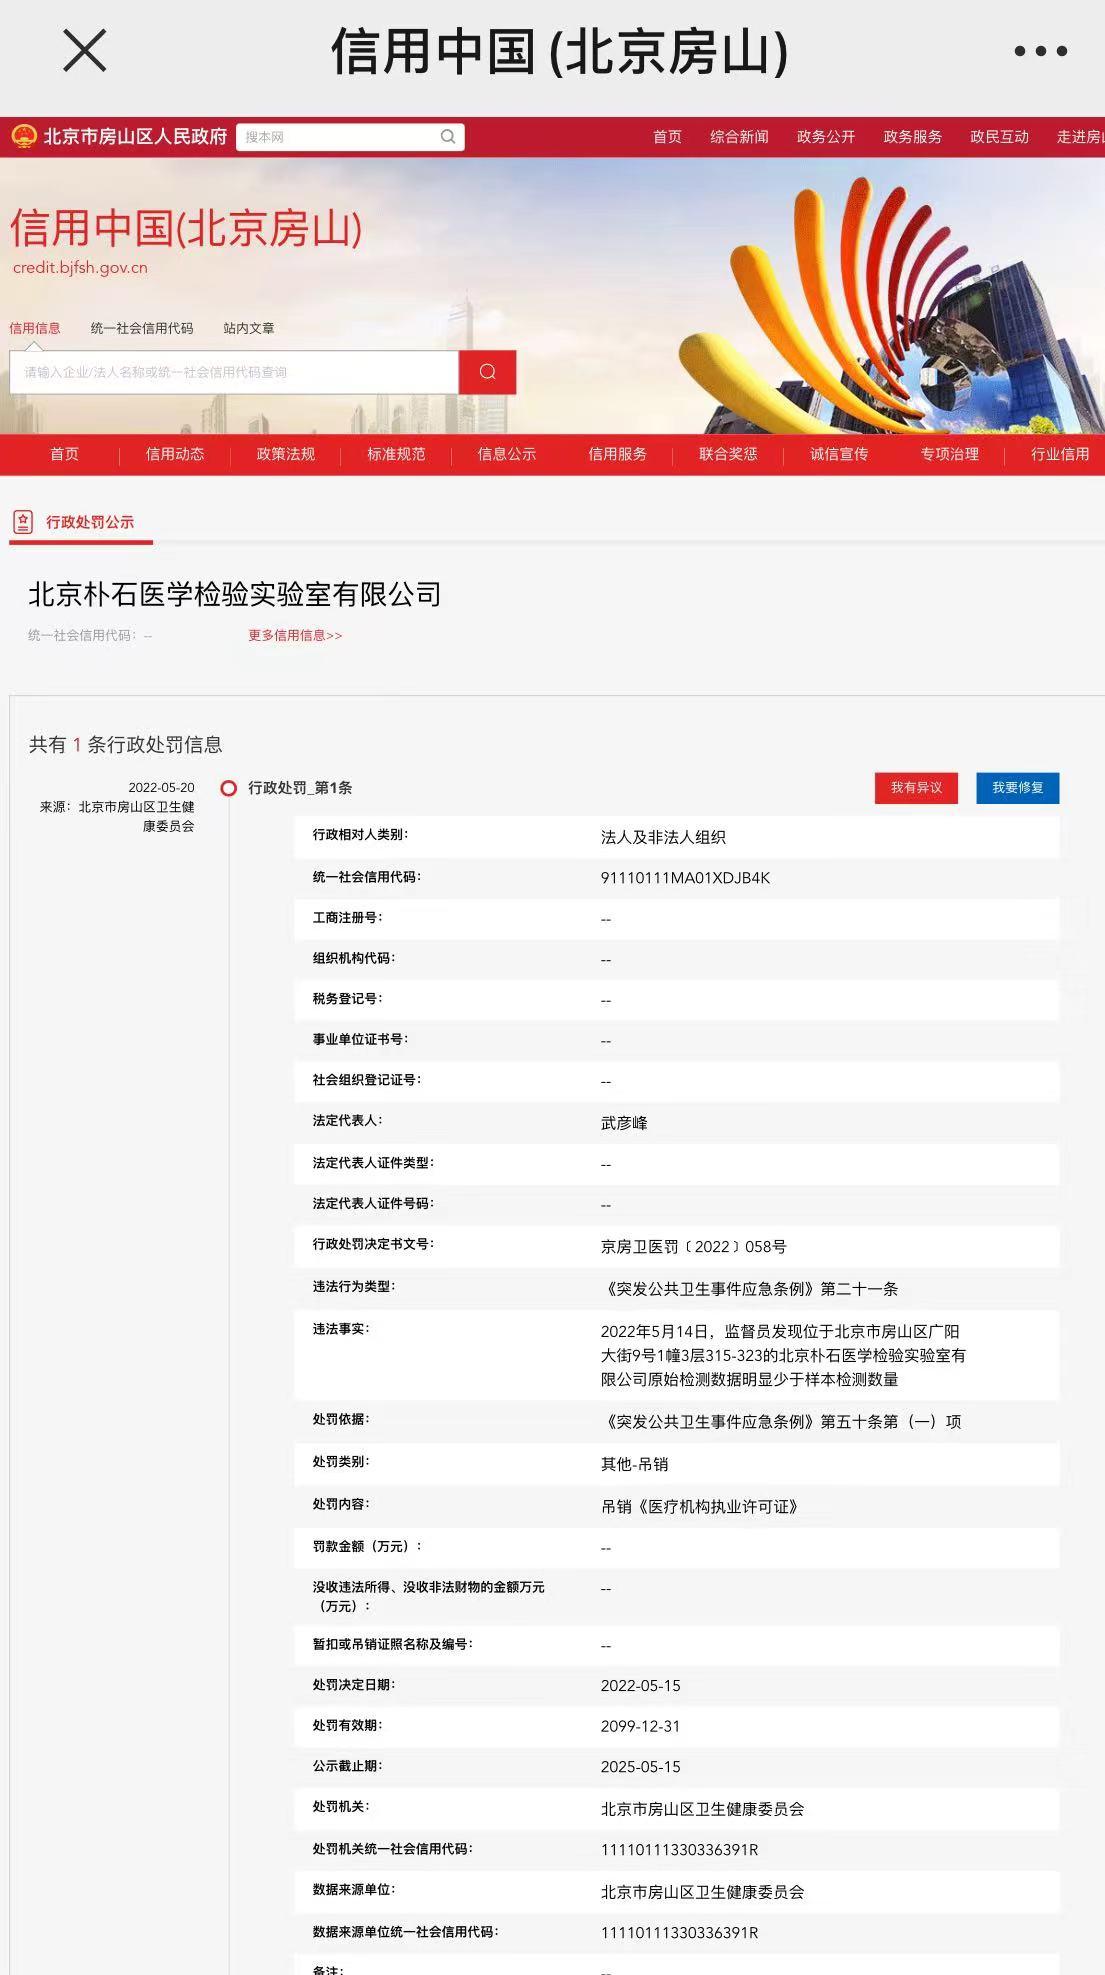 北京一检验实验室被吊销执业许可证：<font color="red">原始</font>检测<font color="red">数据</font>少于样本数量